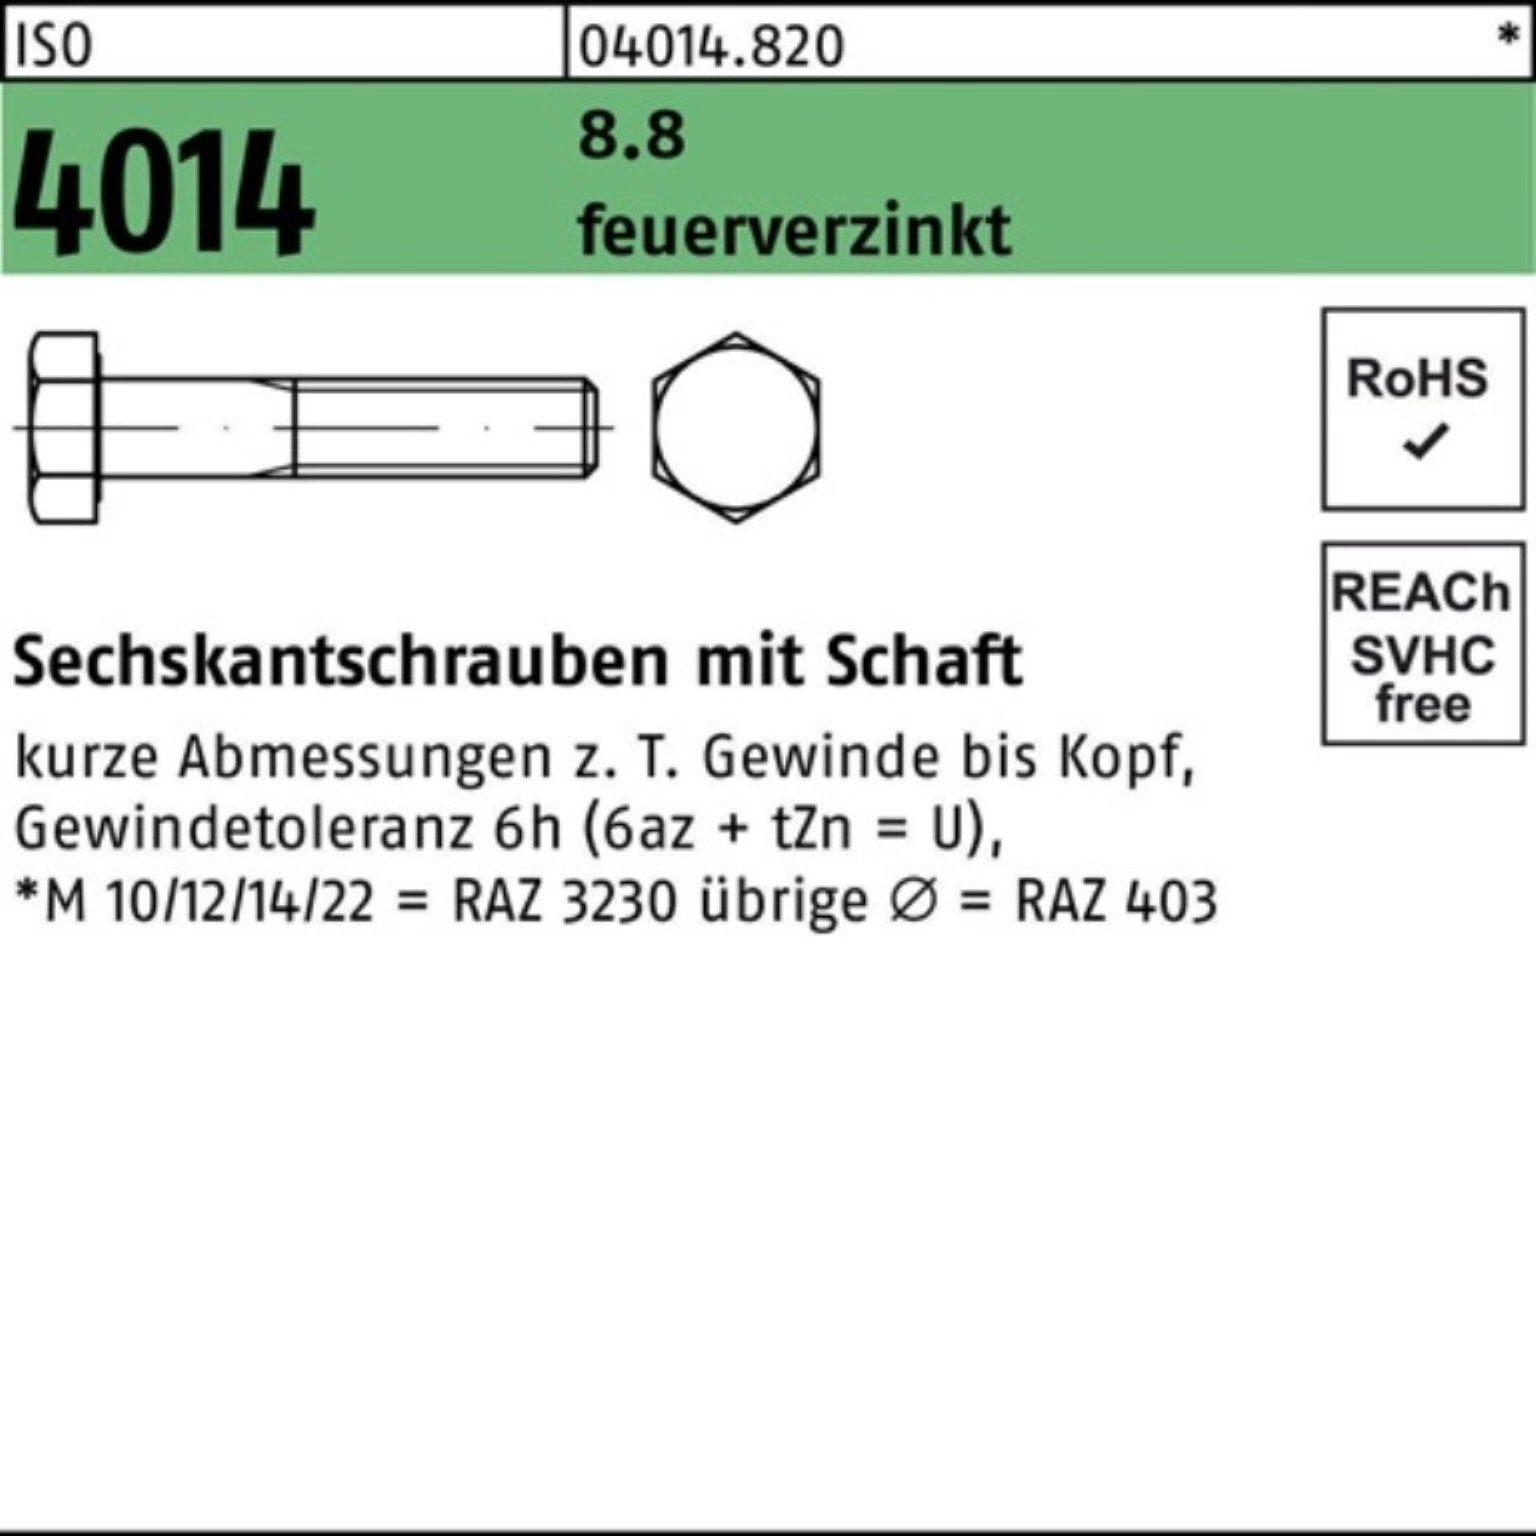 Bufab Sechskantschraube M24x Sechskantschraube feuerverz. 100 100er Schaft 8.8 Pack ISO 1 4014